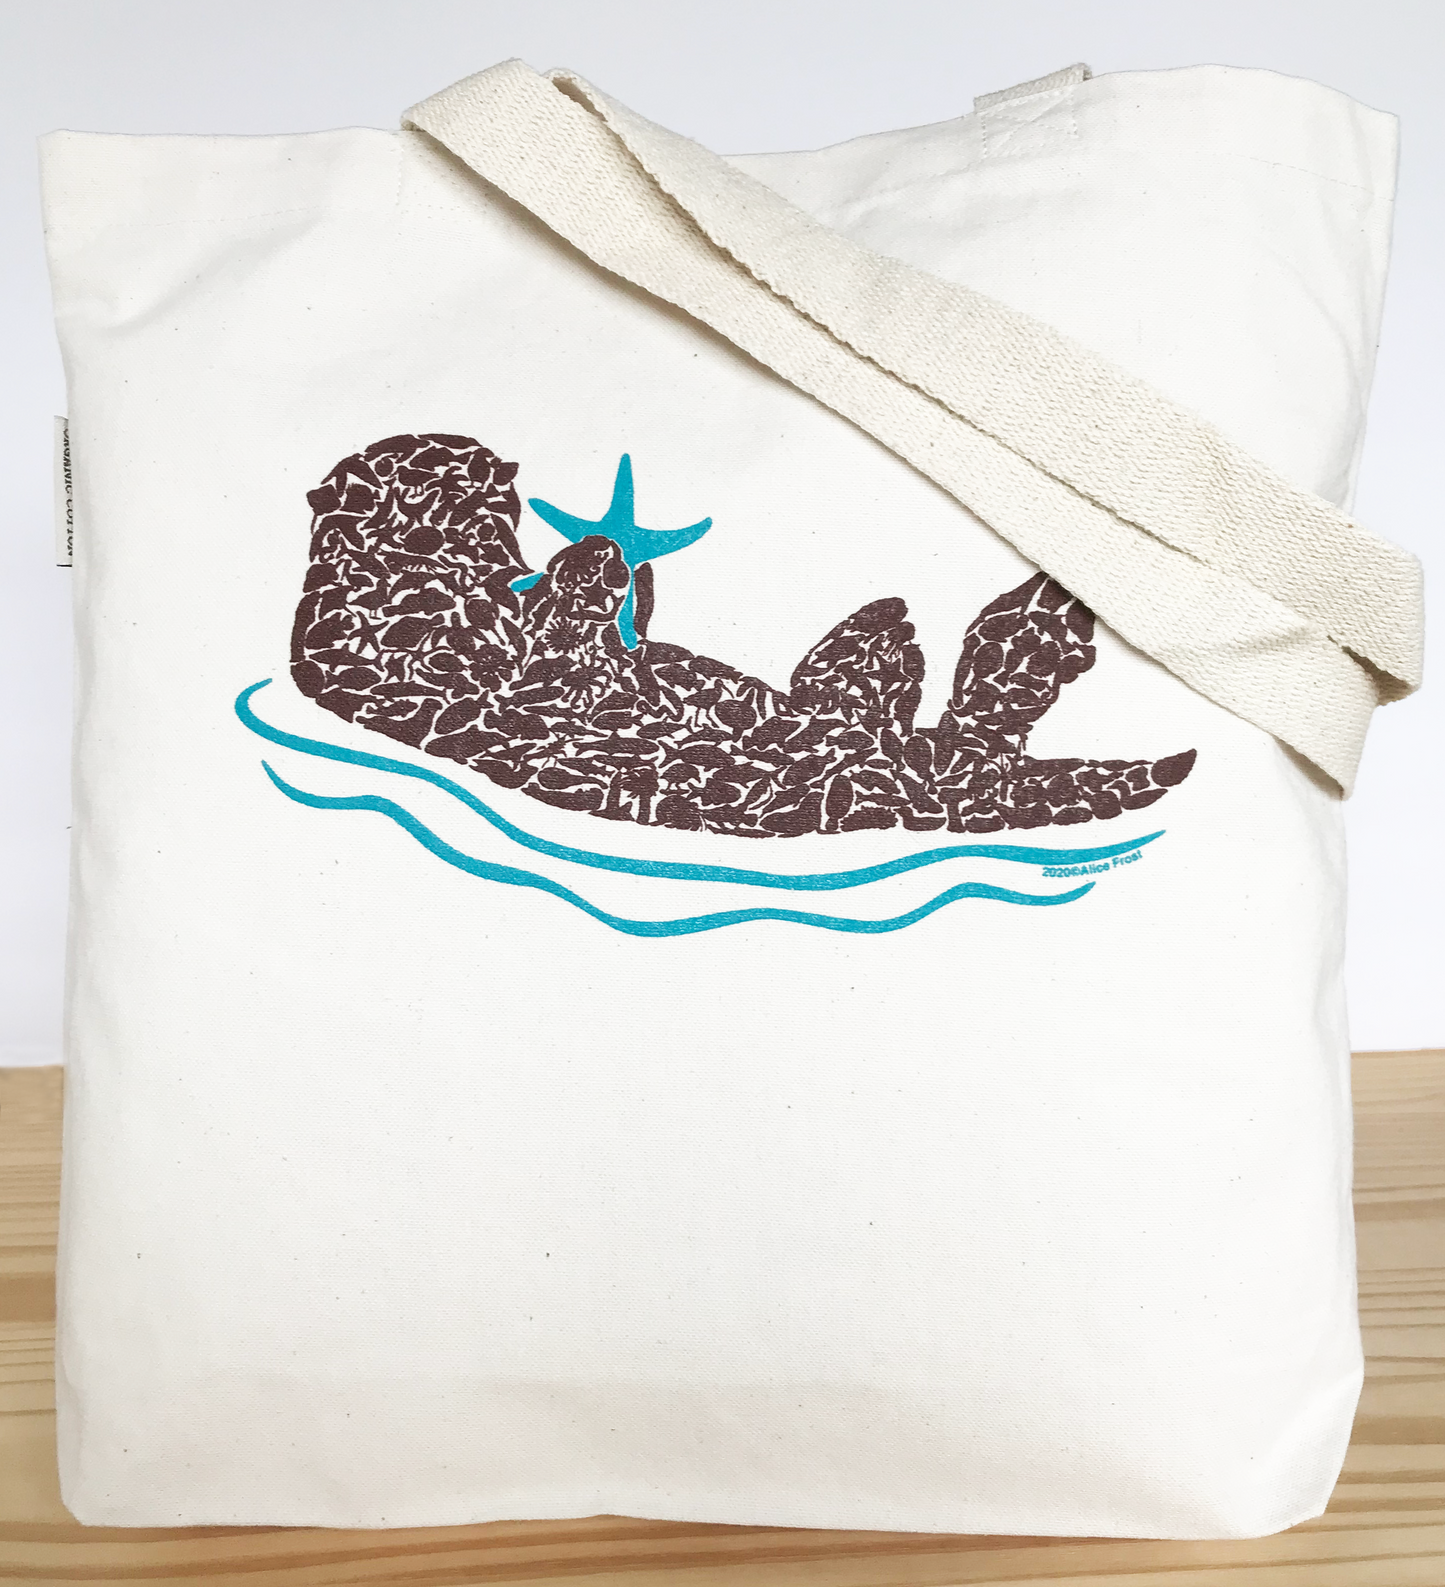 Sea Otter Organic Tote Bag - Alice Frost Studio